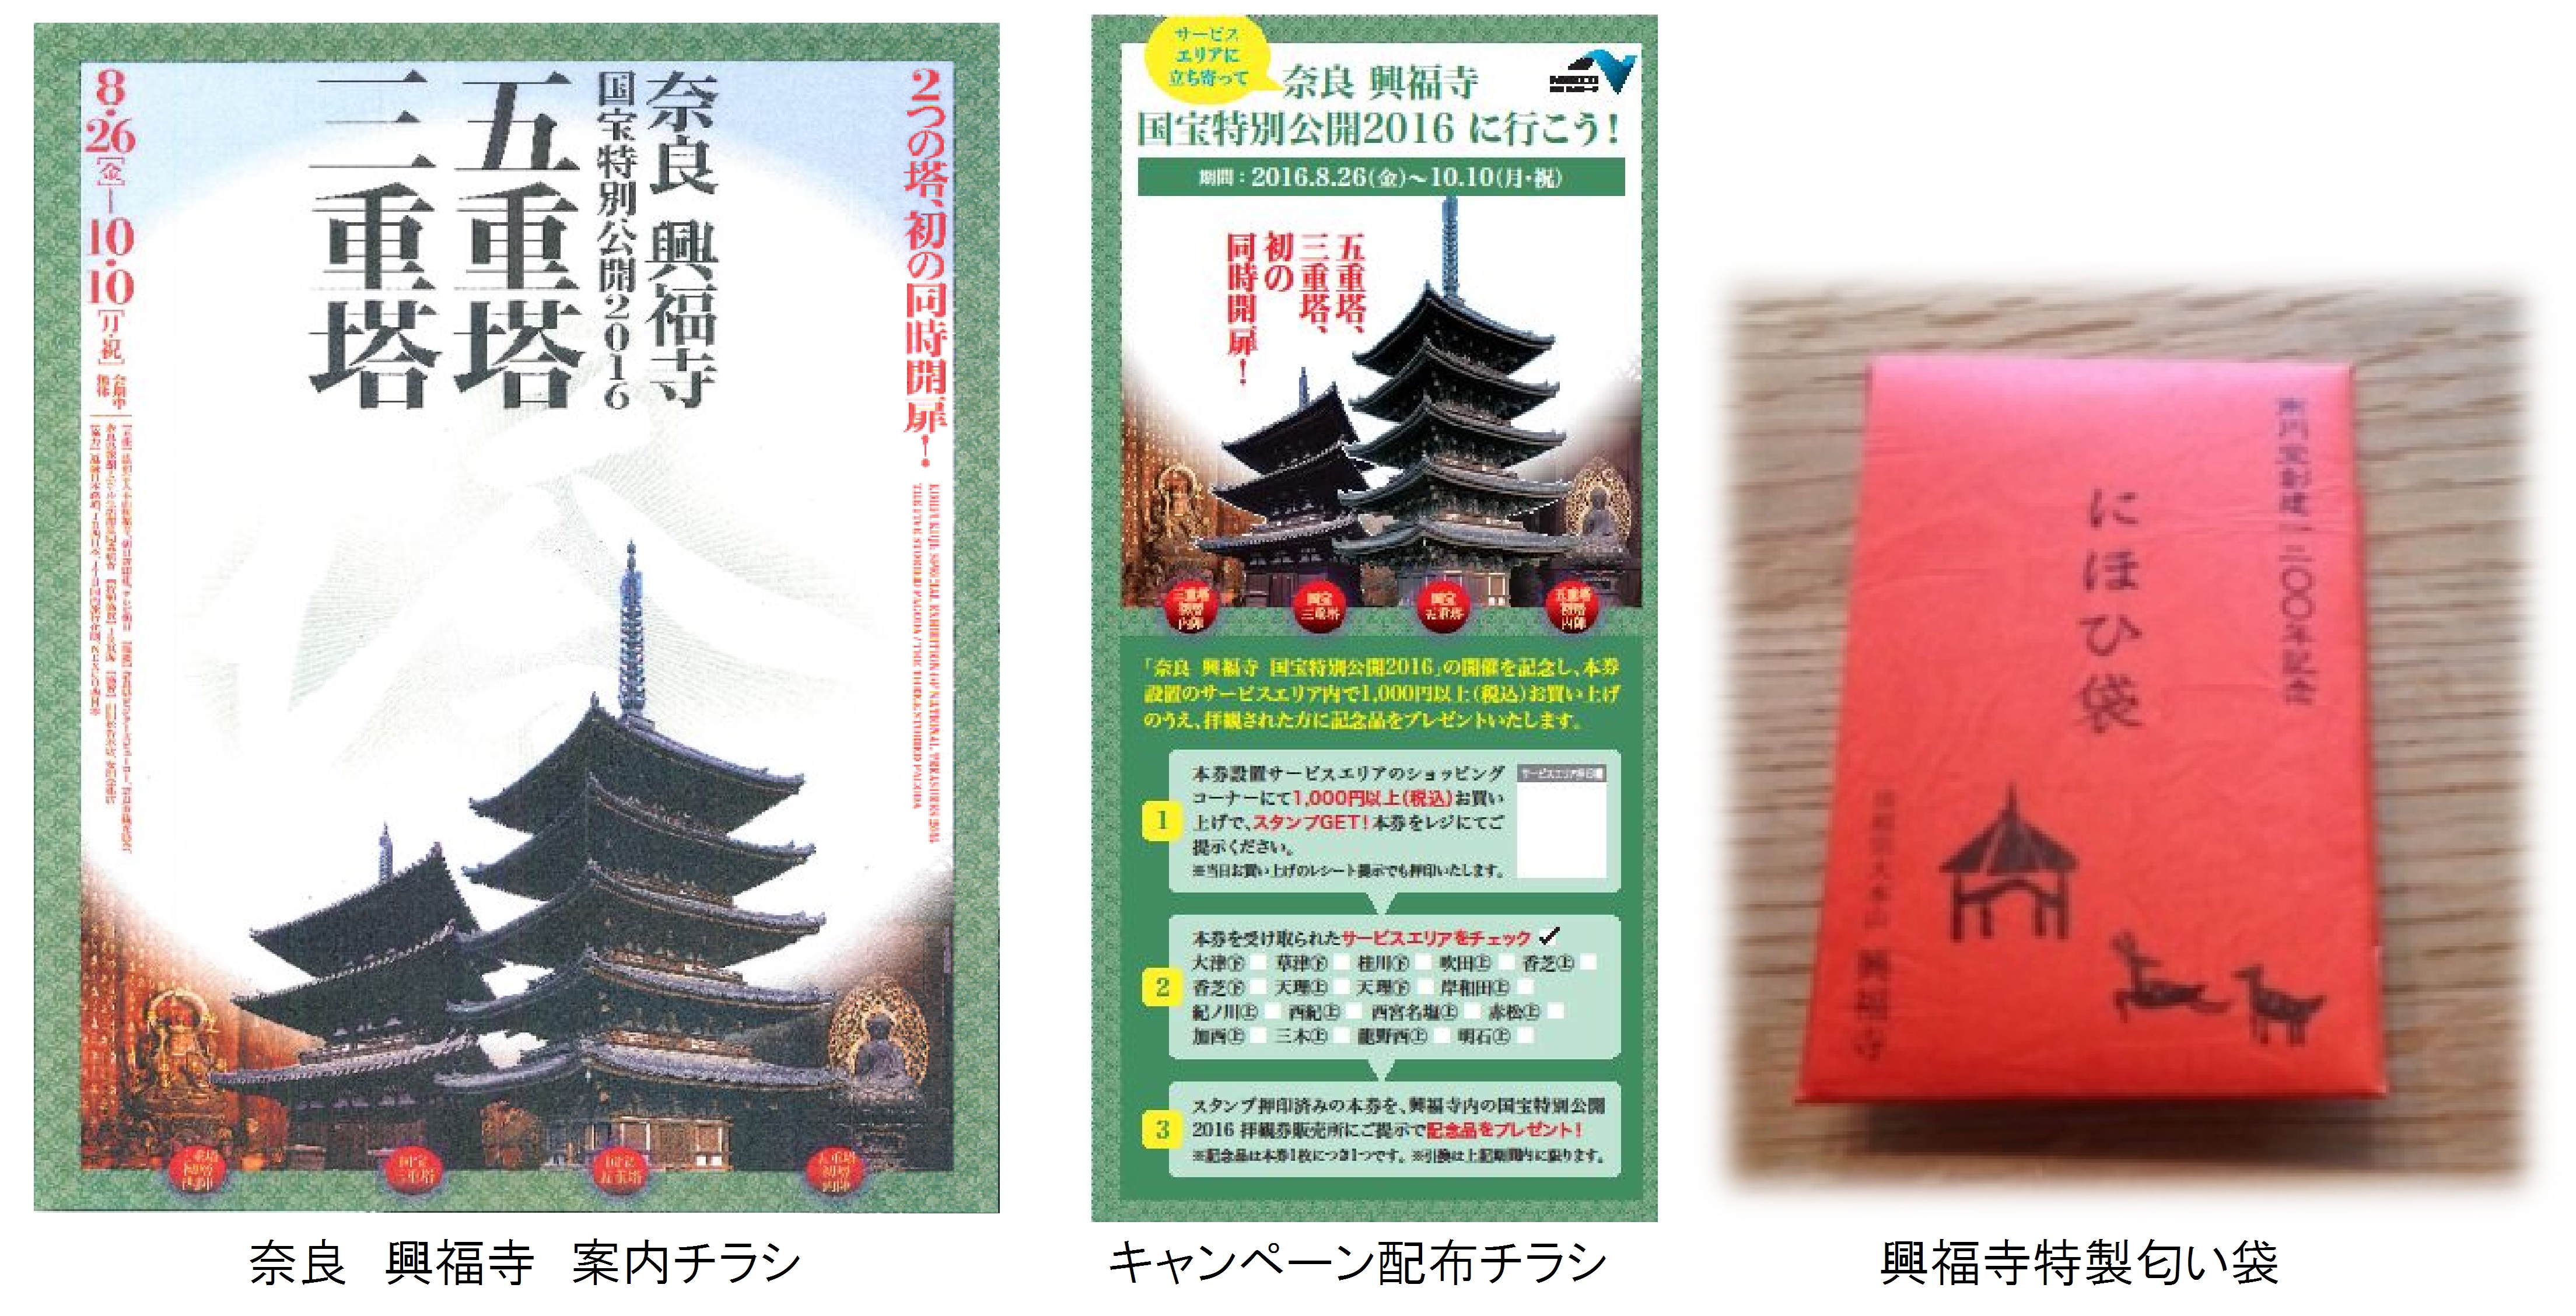 高速道路のｓａ ｐａに立寄って 奈良 興福寺 国宝特別公開16 へ出かけよう Nexco西日本のプレスリリース